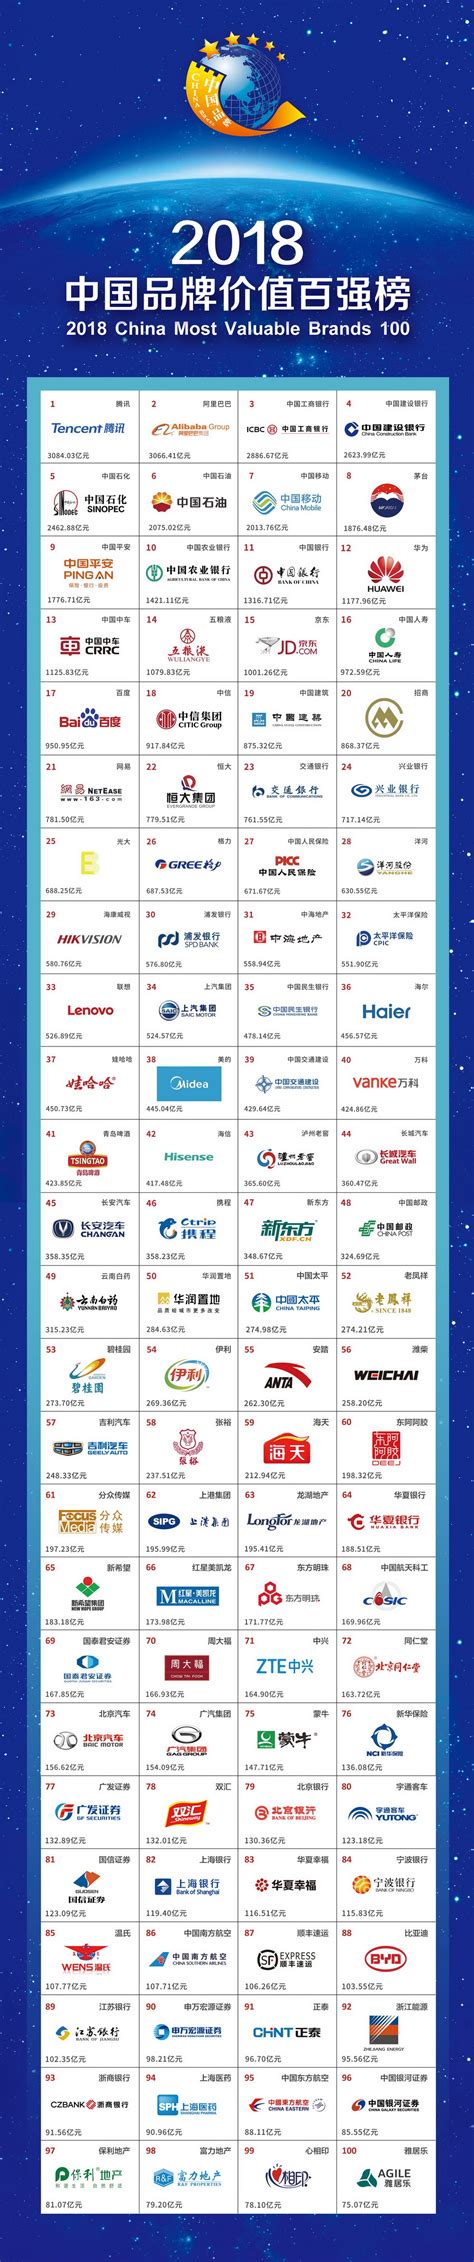 2018中国品牌价值百强榜单 - 品牌评价 - 中国品牌建设促进会